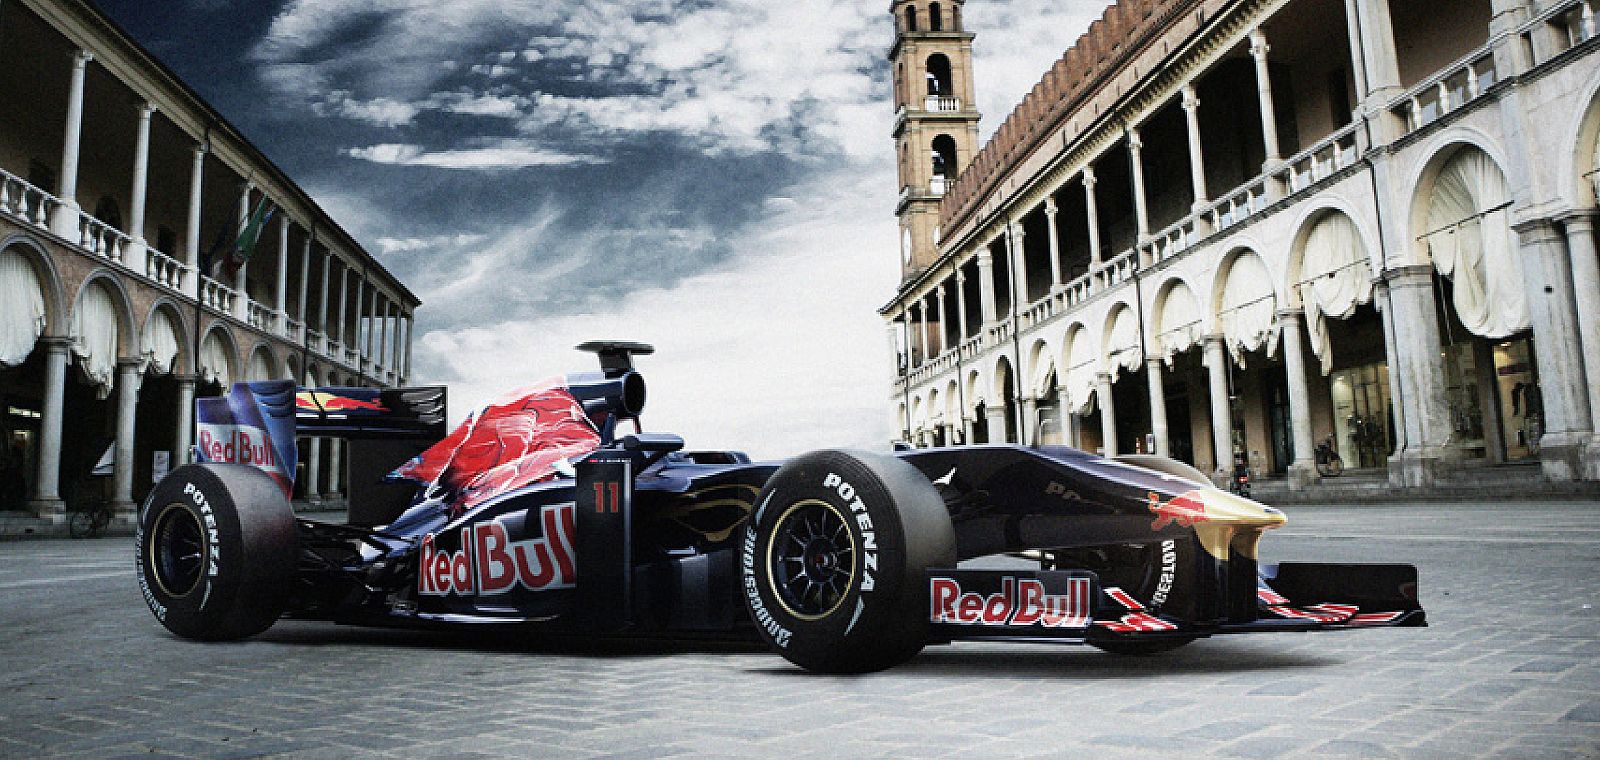 El nuevo monoplaza de Toro Rosso, que se basa en el 'RB5' usado por Red Bull el año anterior, volverá a contar con un motor Ferrari.